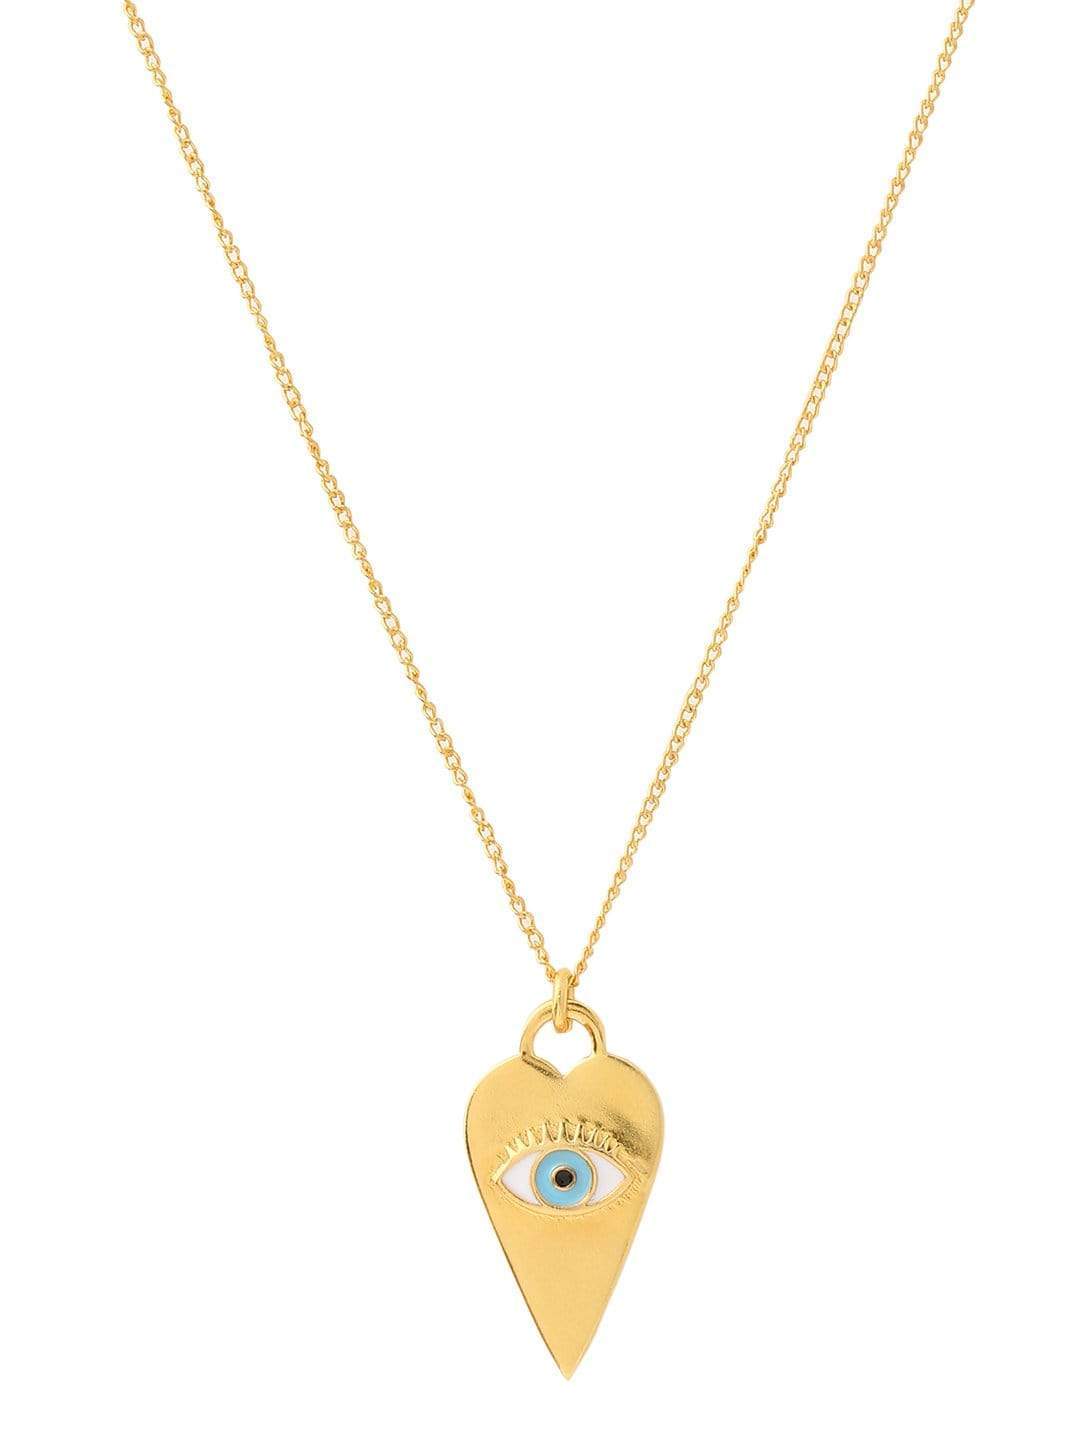 AZGA Heart Eye Neck Chain- Gold